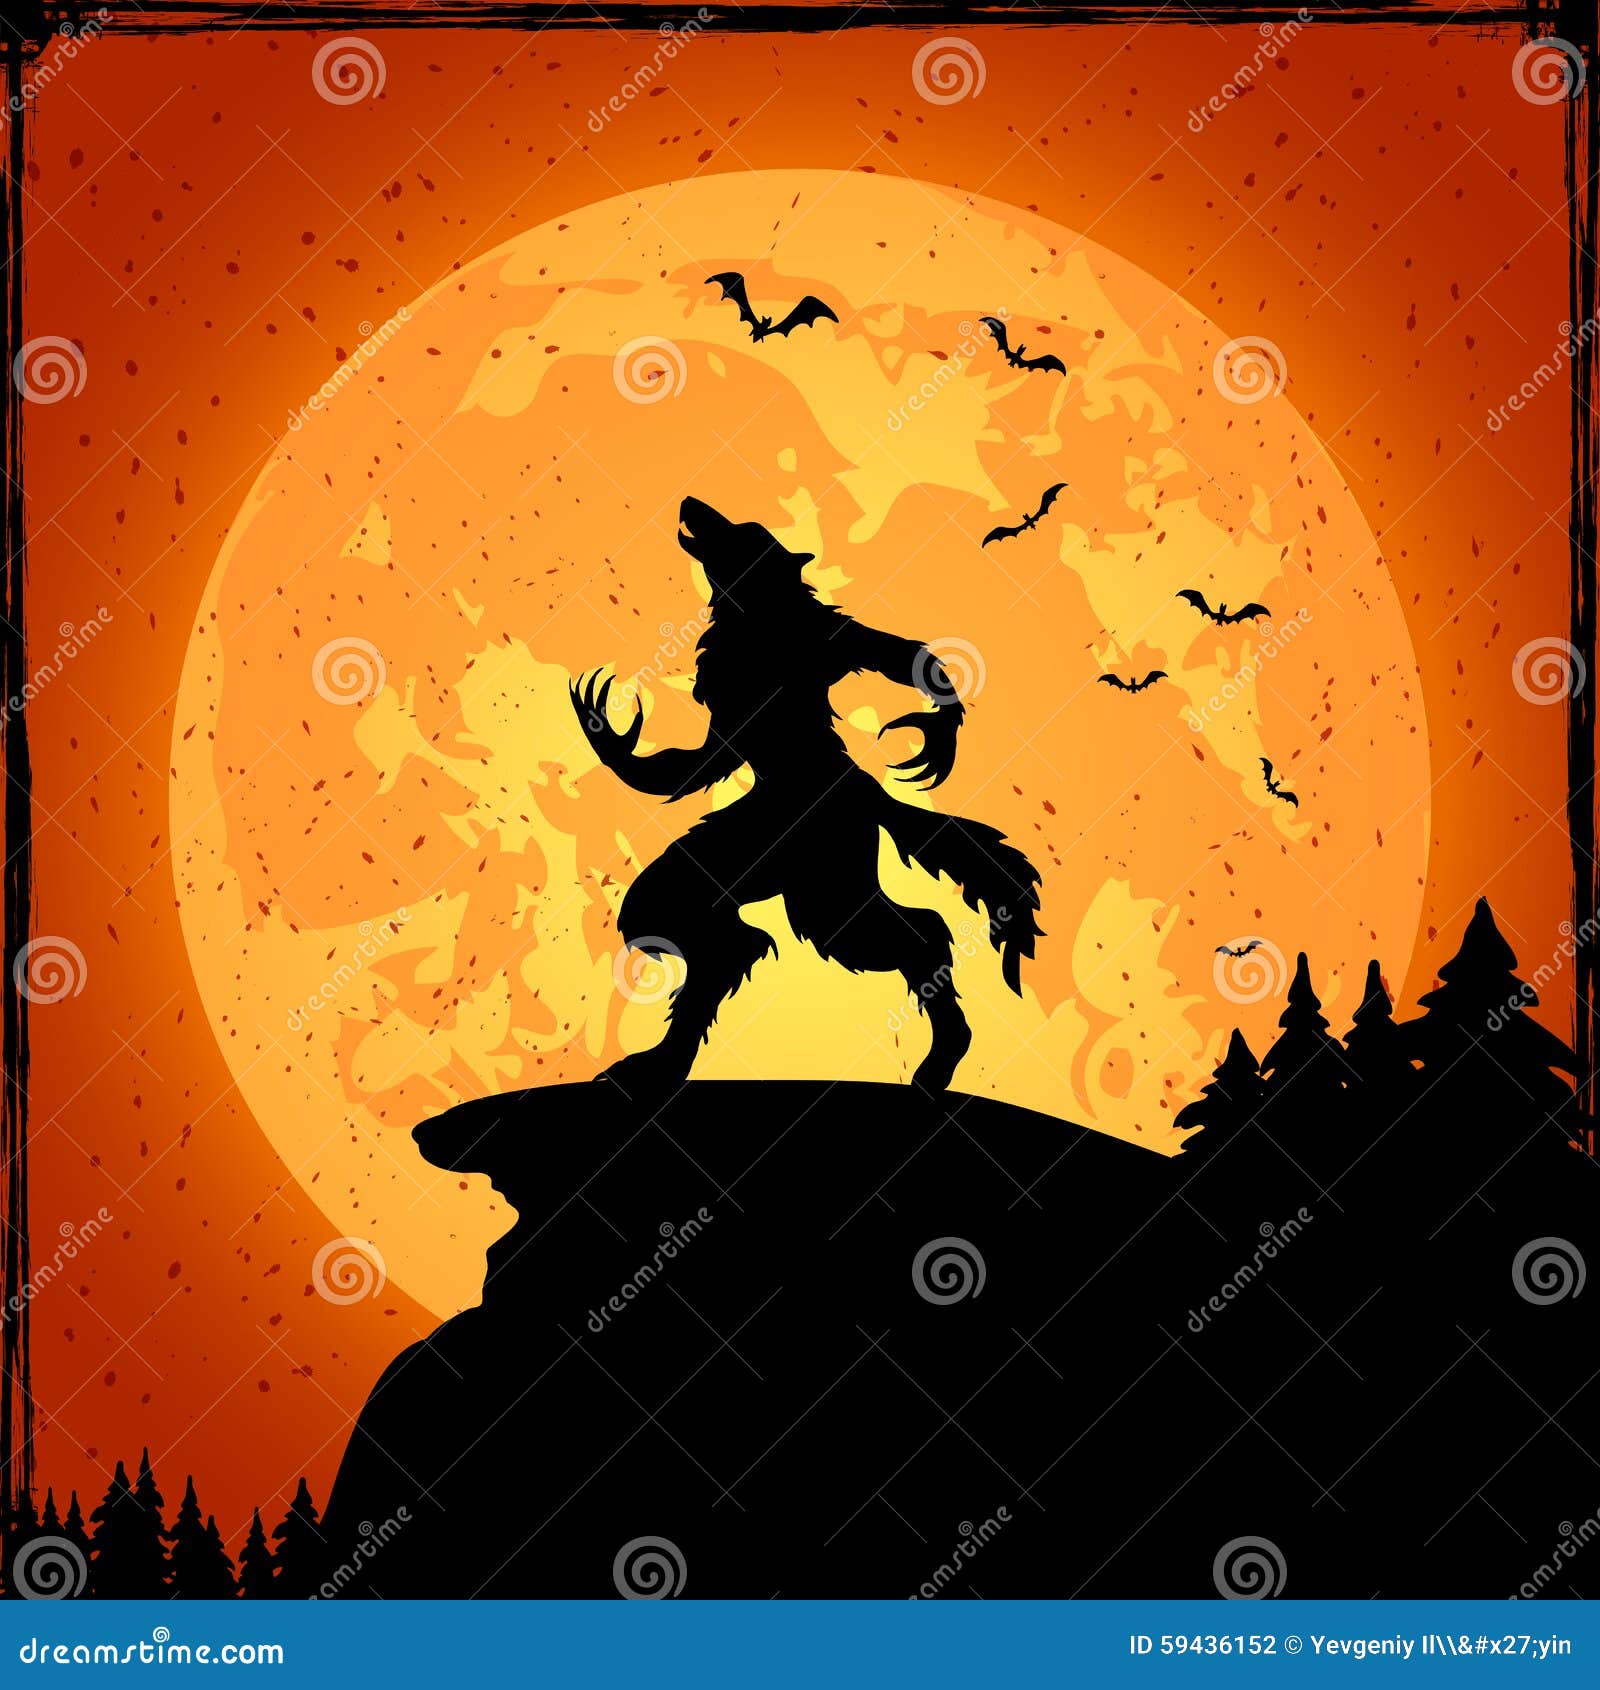 werewolf on orange background